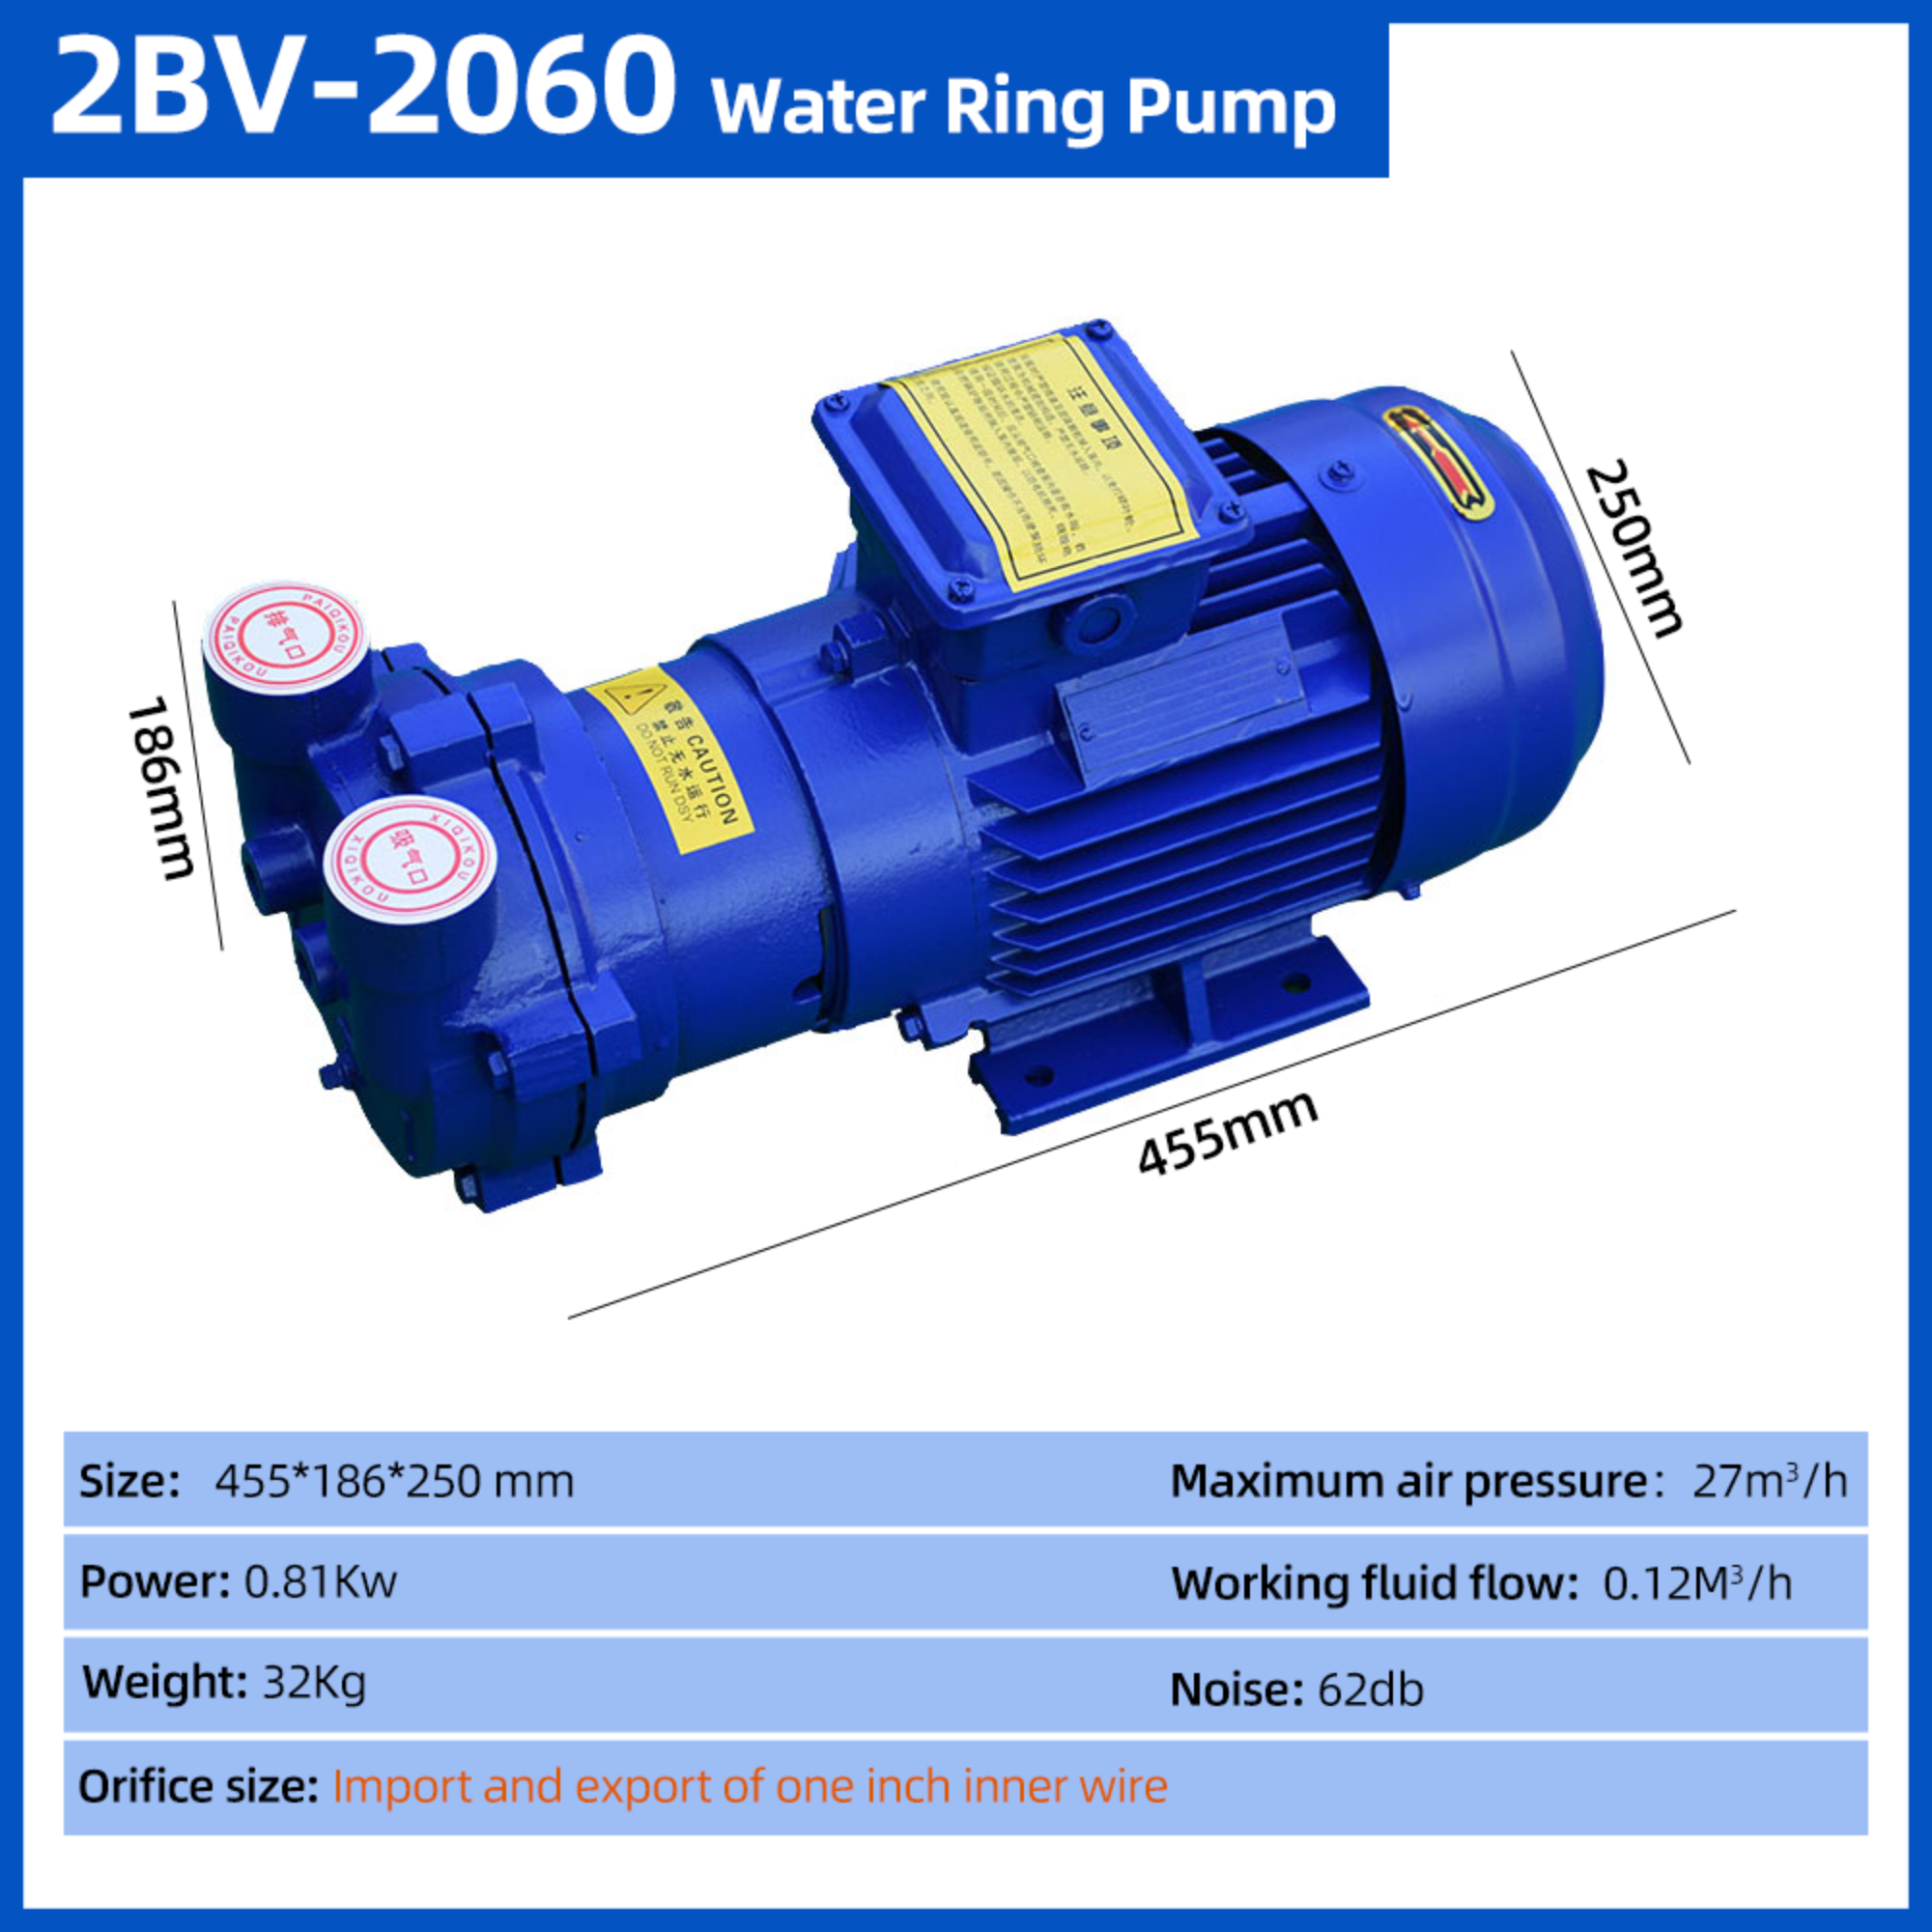 2BV-2060 série industrial bomba de vácuo de circulação de água de alto vácuo compressor de anel de água bomba de vácuo